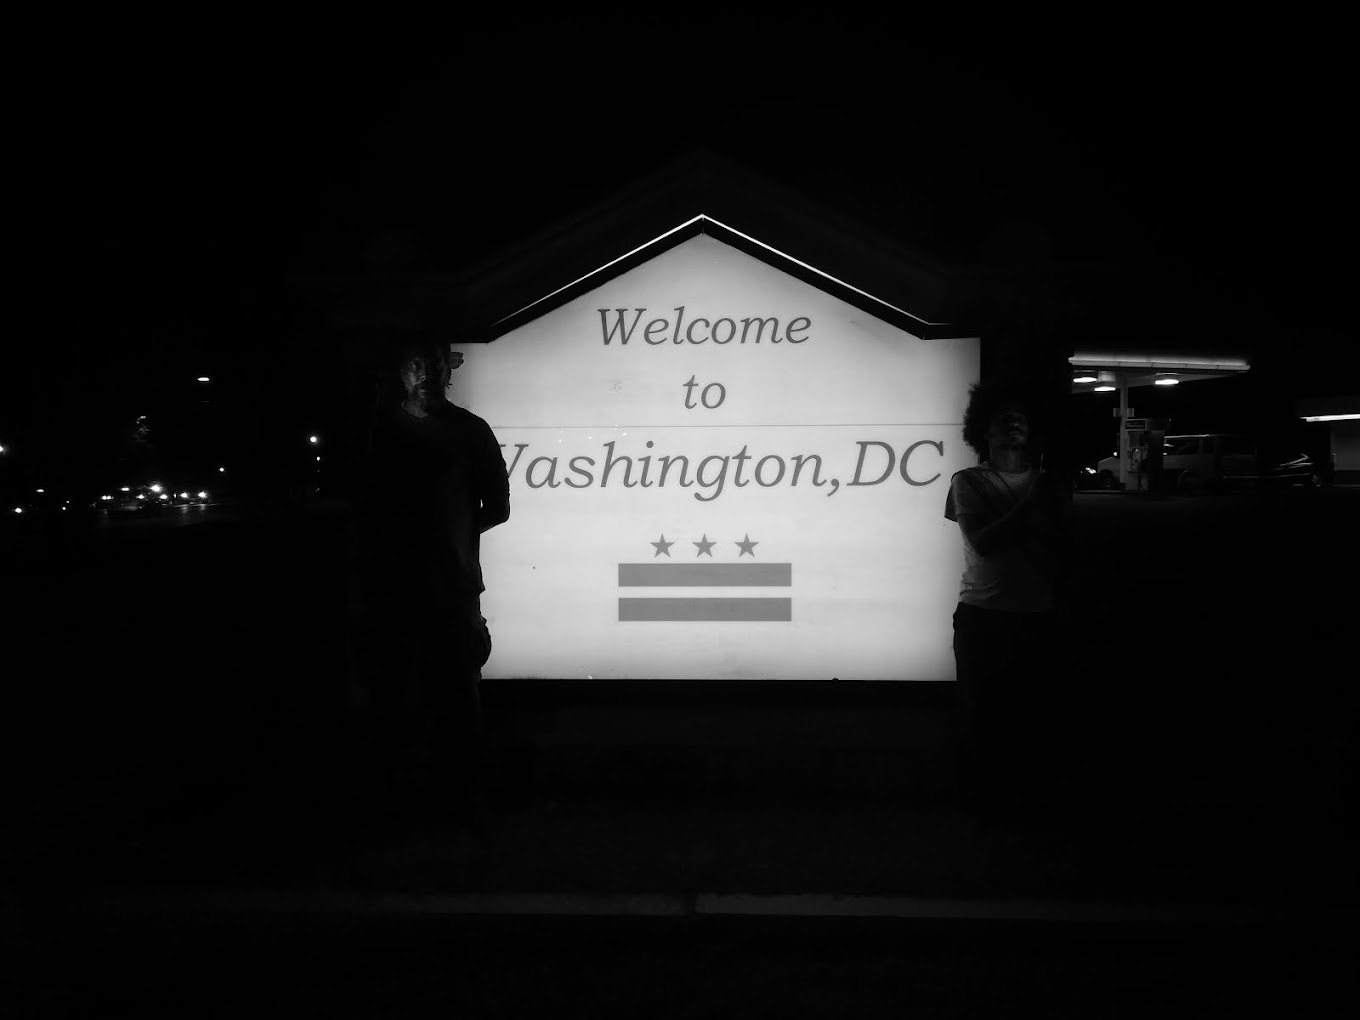 CA - welcome to washington, dc - 01 - washington - DC - USA - AMERICA - 2018